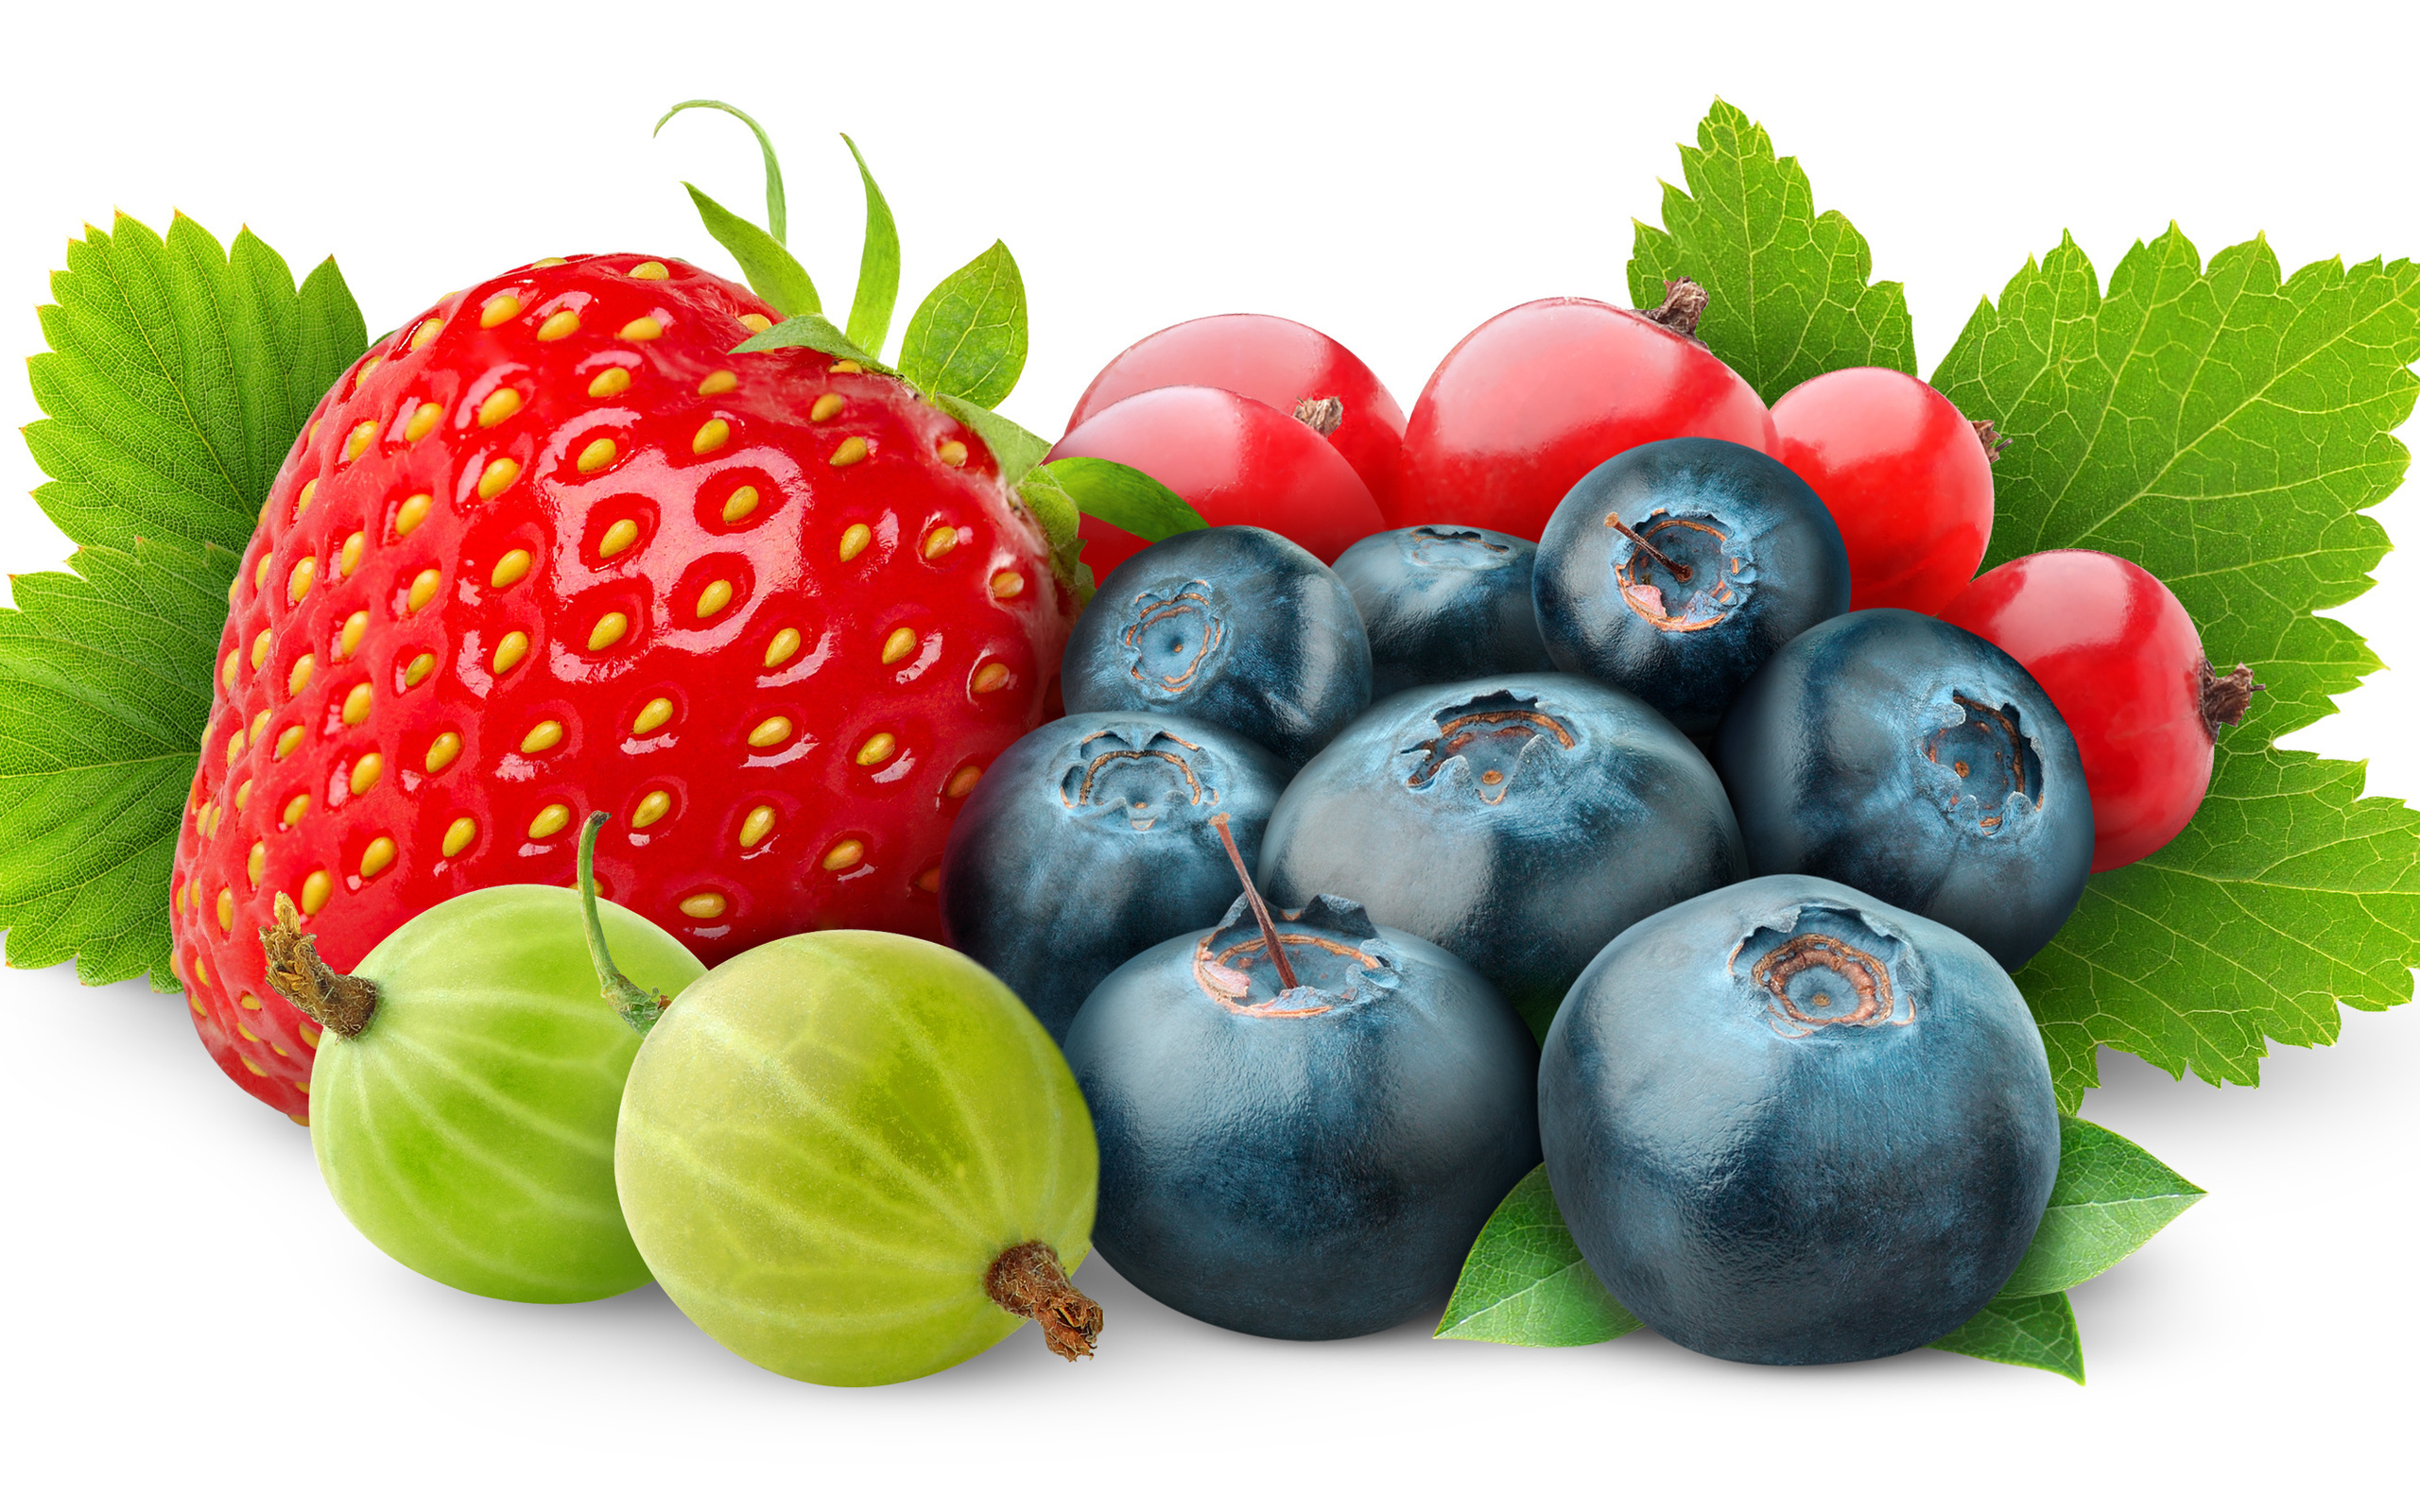 اگر دنبال میوه کم قند و دیابتی می گردید، این مطلب مخصوص شماست!